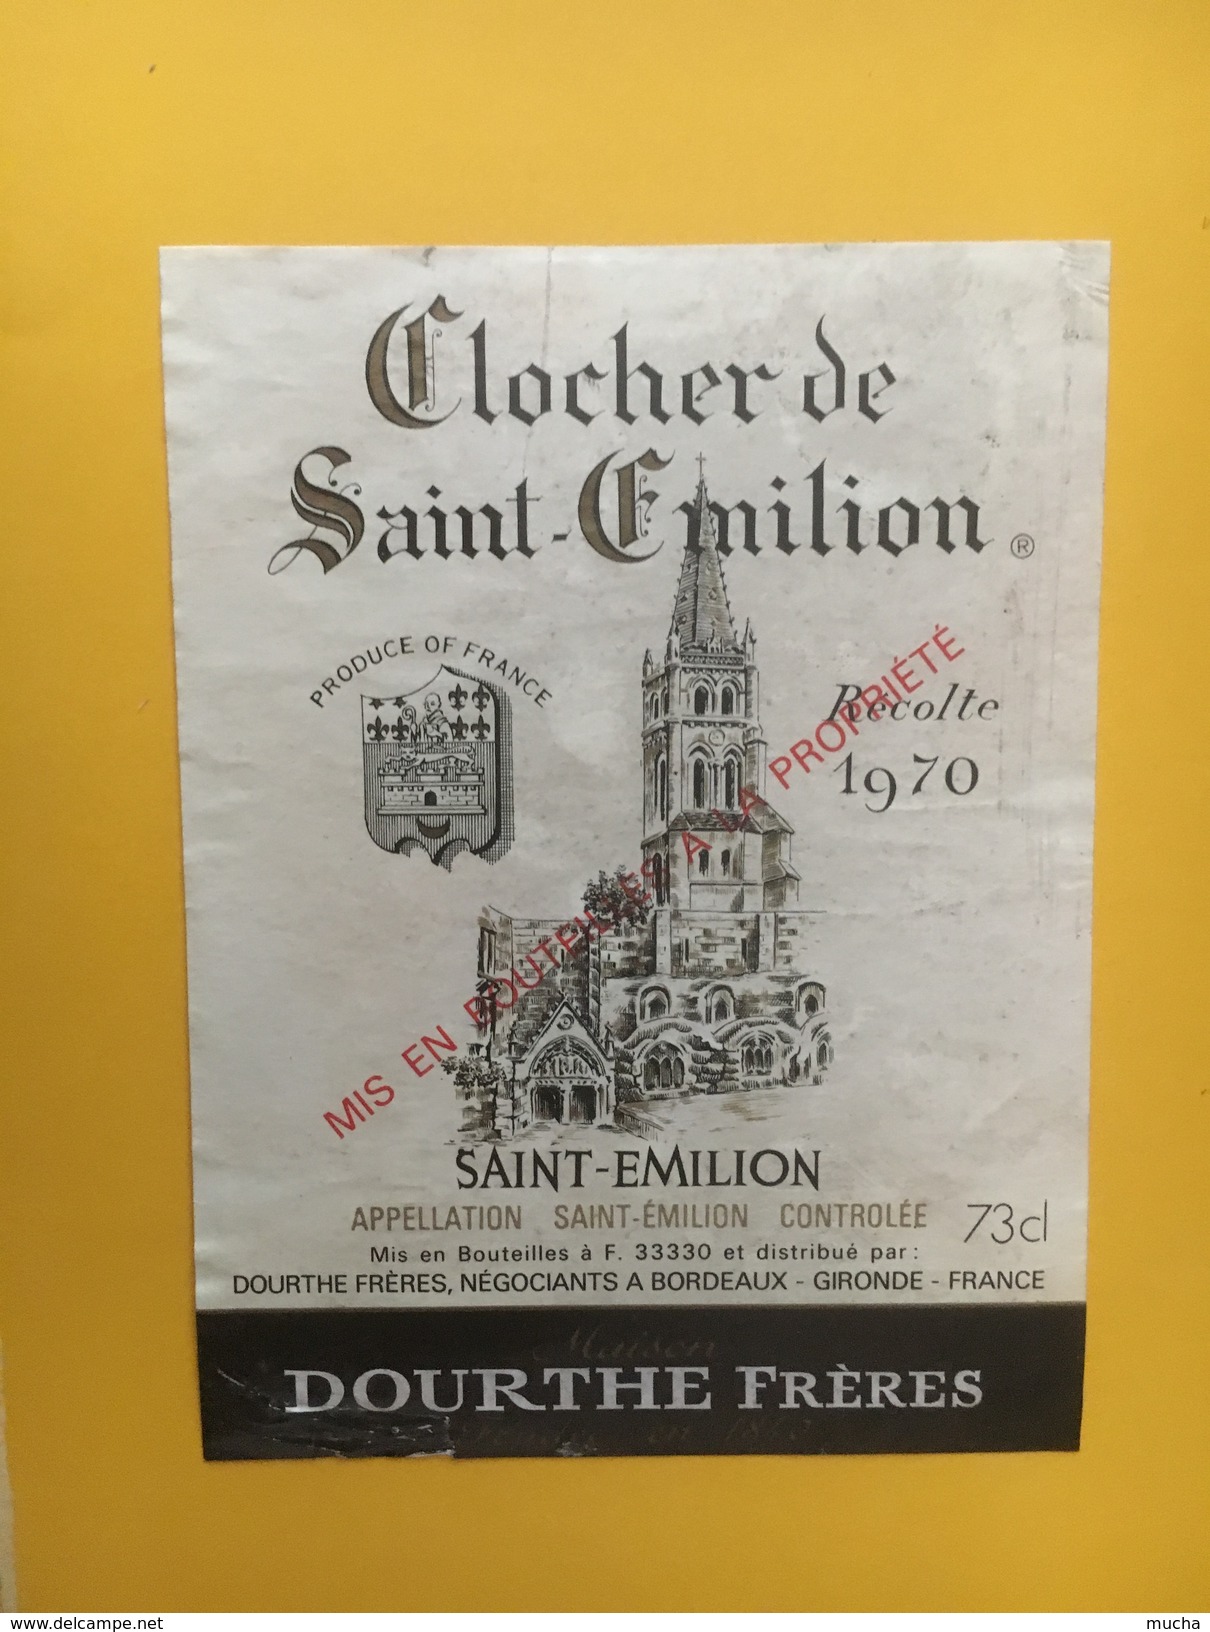 5565 - Clocher De Saint-Emilion 1970 Dourthe Frères - Bordeaux